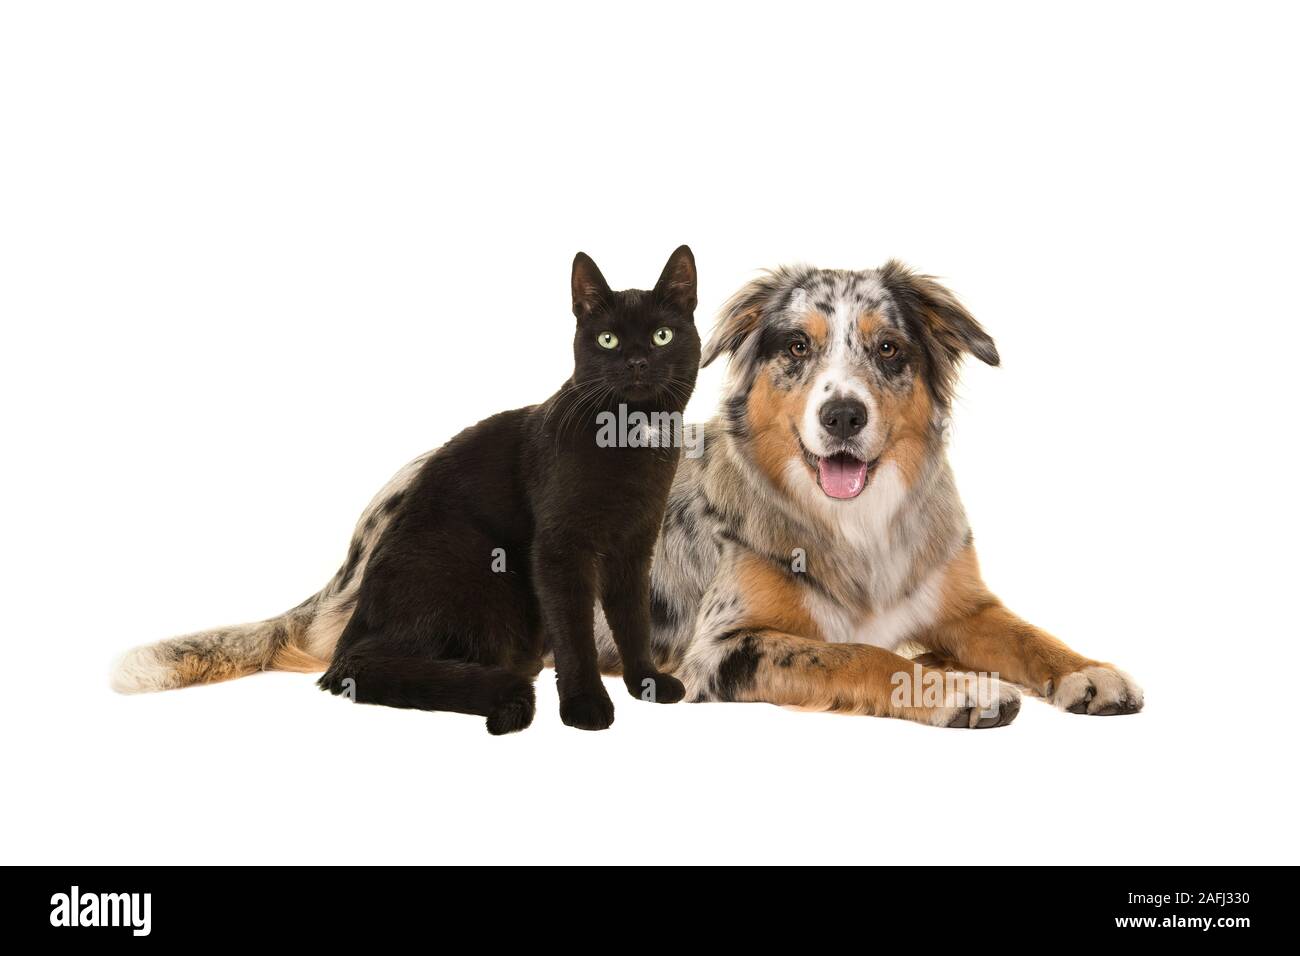 Ziemlich liegend blue merle Australian Shepherd Dog und eine sitzende schwarze Katze zusammen mit Blick auf die Kamera auf einem weißen Hintergrund isoliert Stockfoto